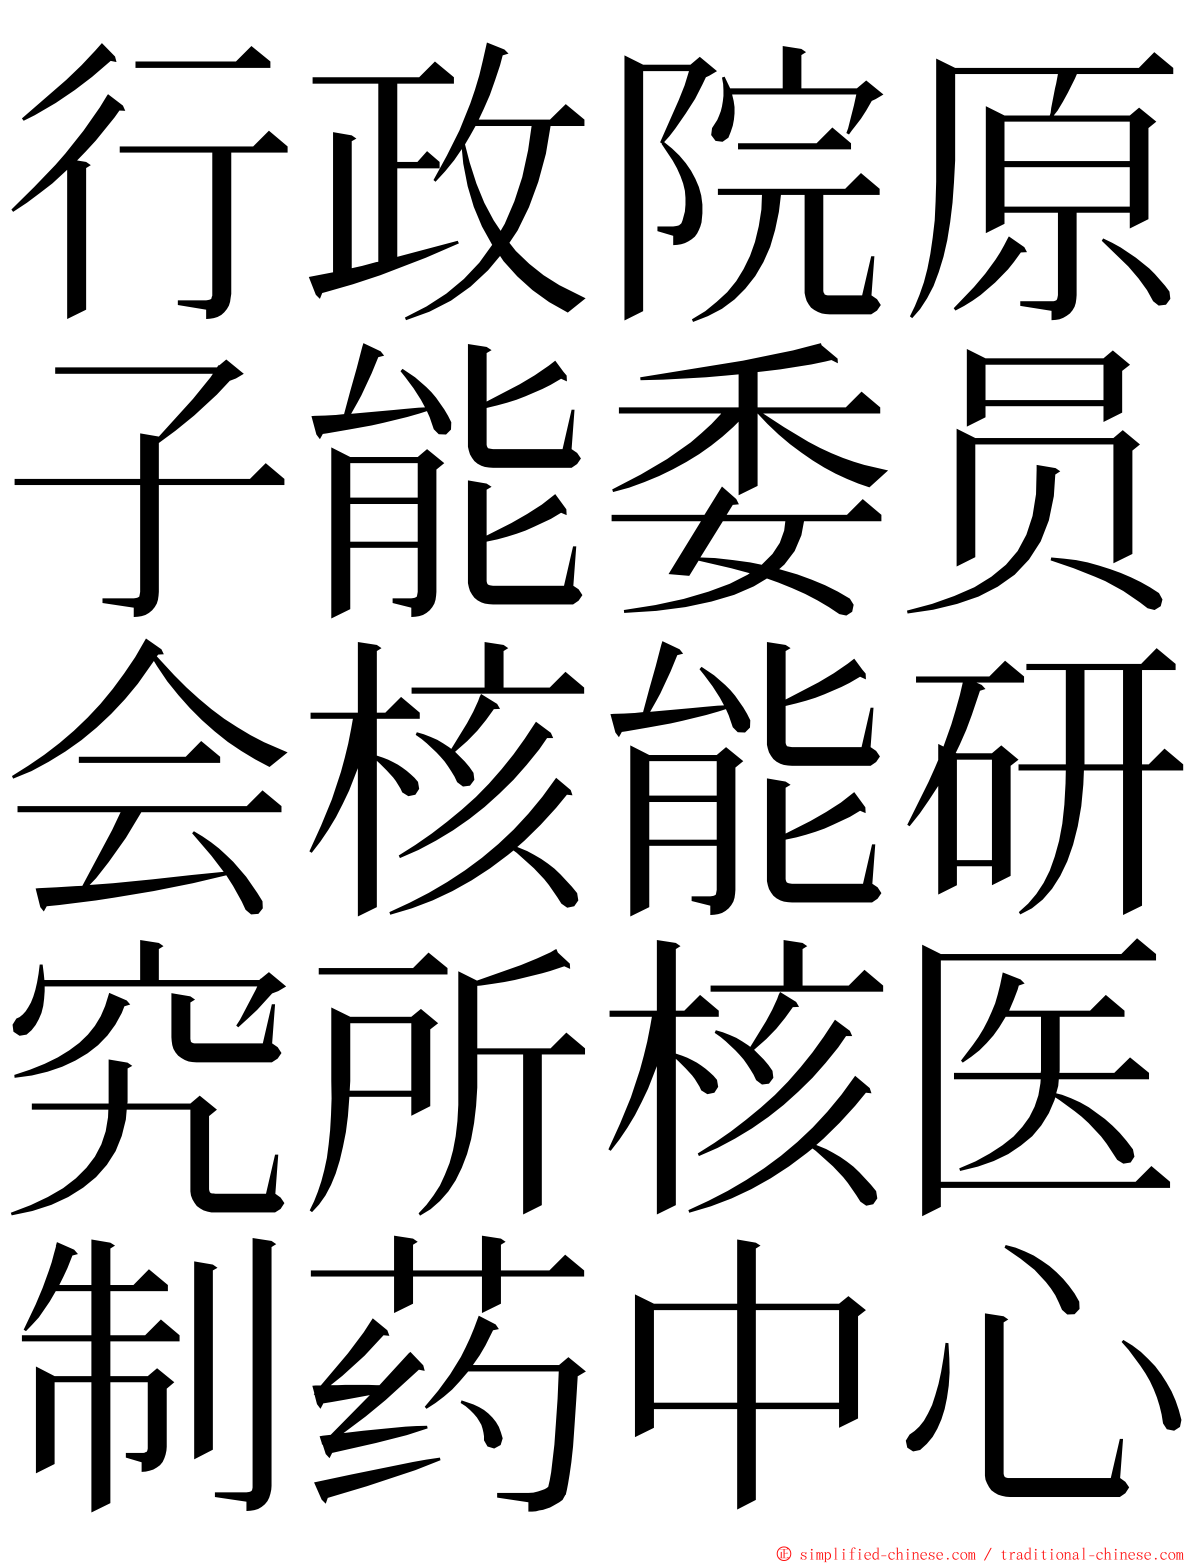 行政院原子能委员会核能研究所核医制药中心 ming font